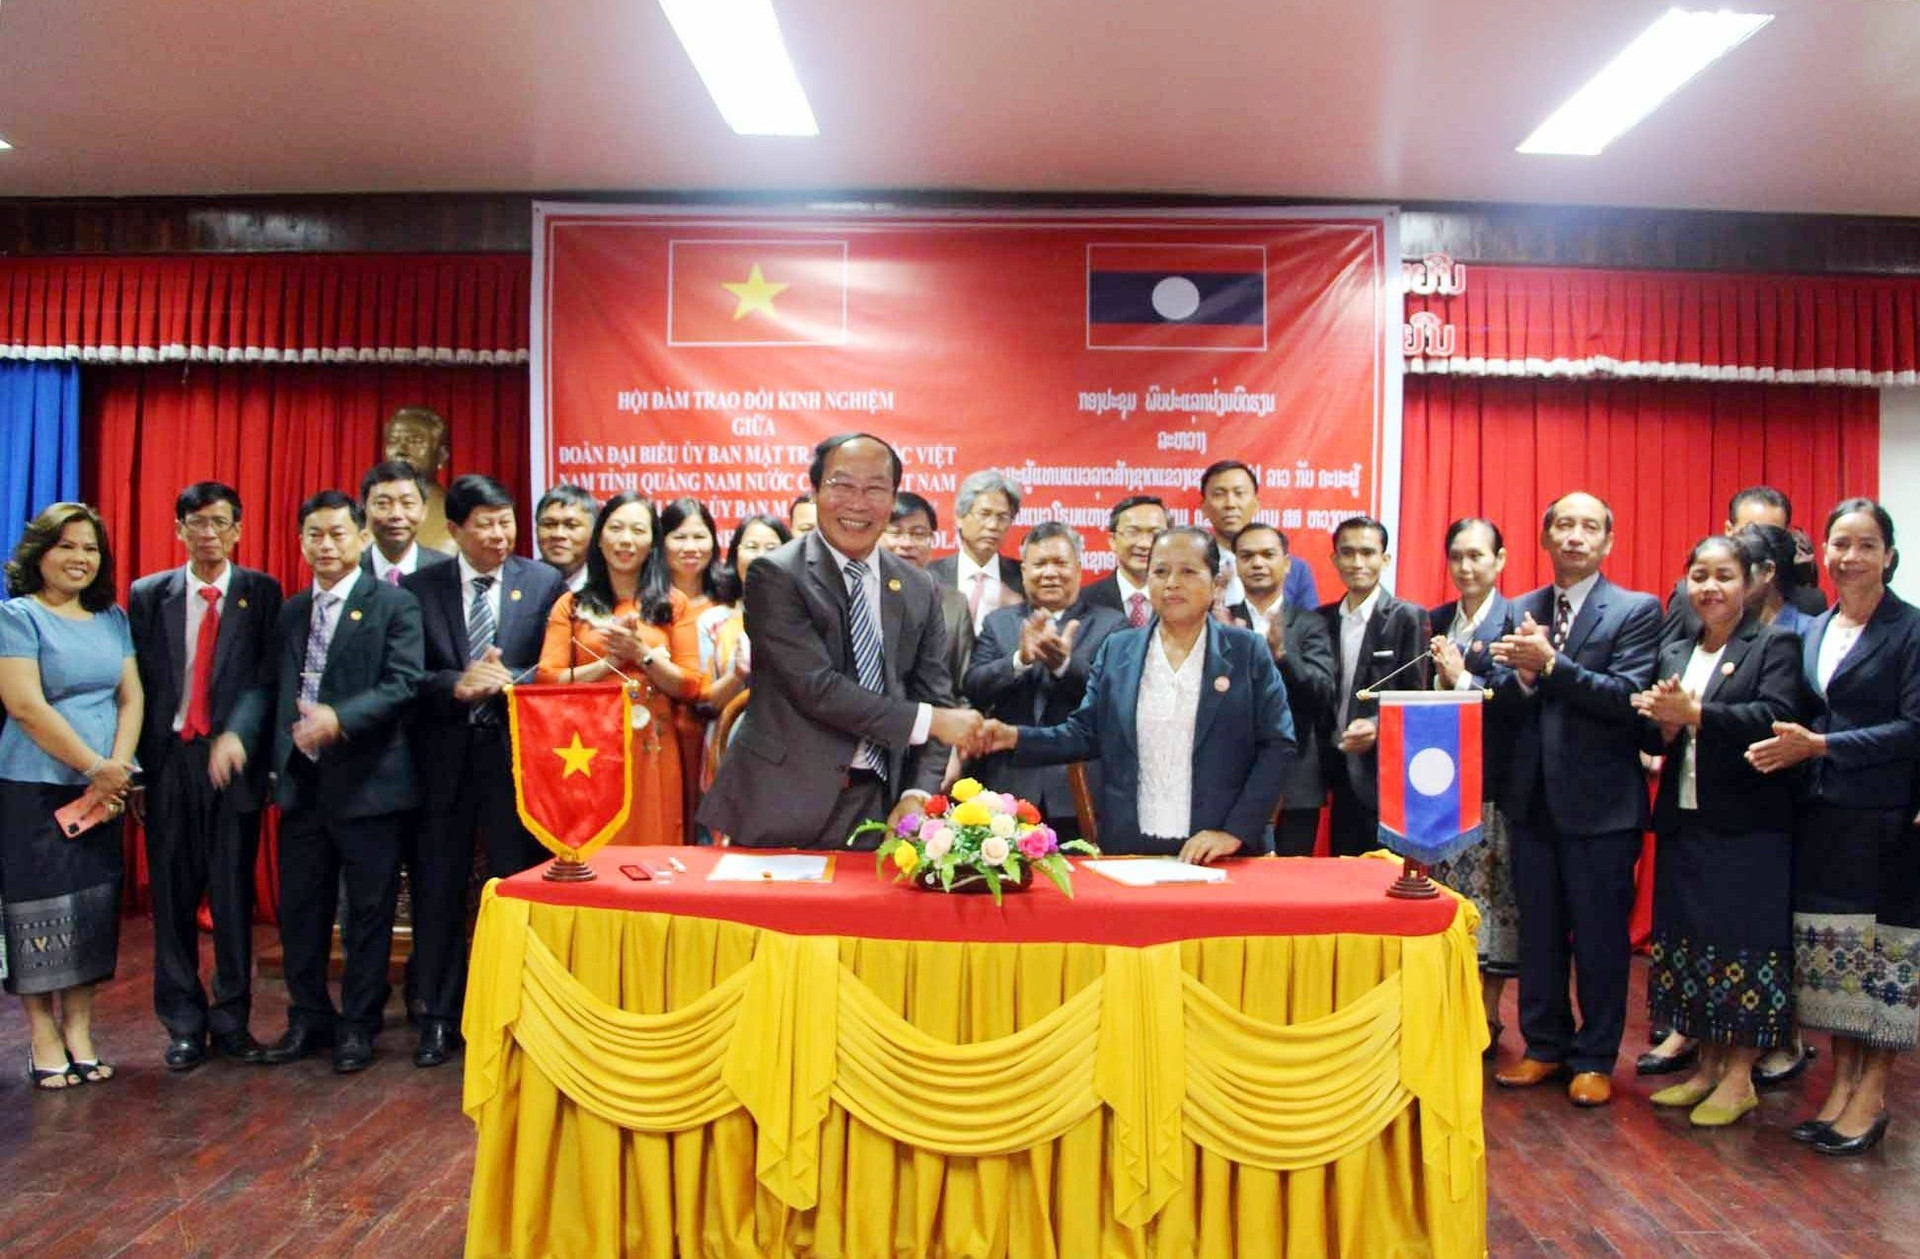 Ủy ban MTTQ Việt Nam tỉnh Quảng Nam và Ủy ban Mặt trận Lào xây dựng đất nước tỉnh Sê Kông ký kết biên bản thỏa thuận hợp tác giai đoạn 2022 - 2027. NGỌC TRUYỀN